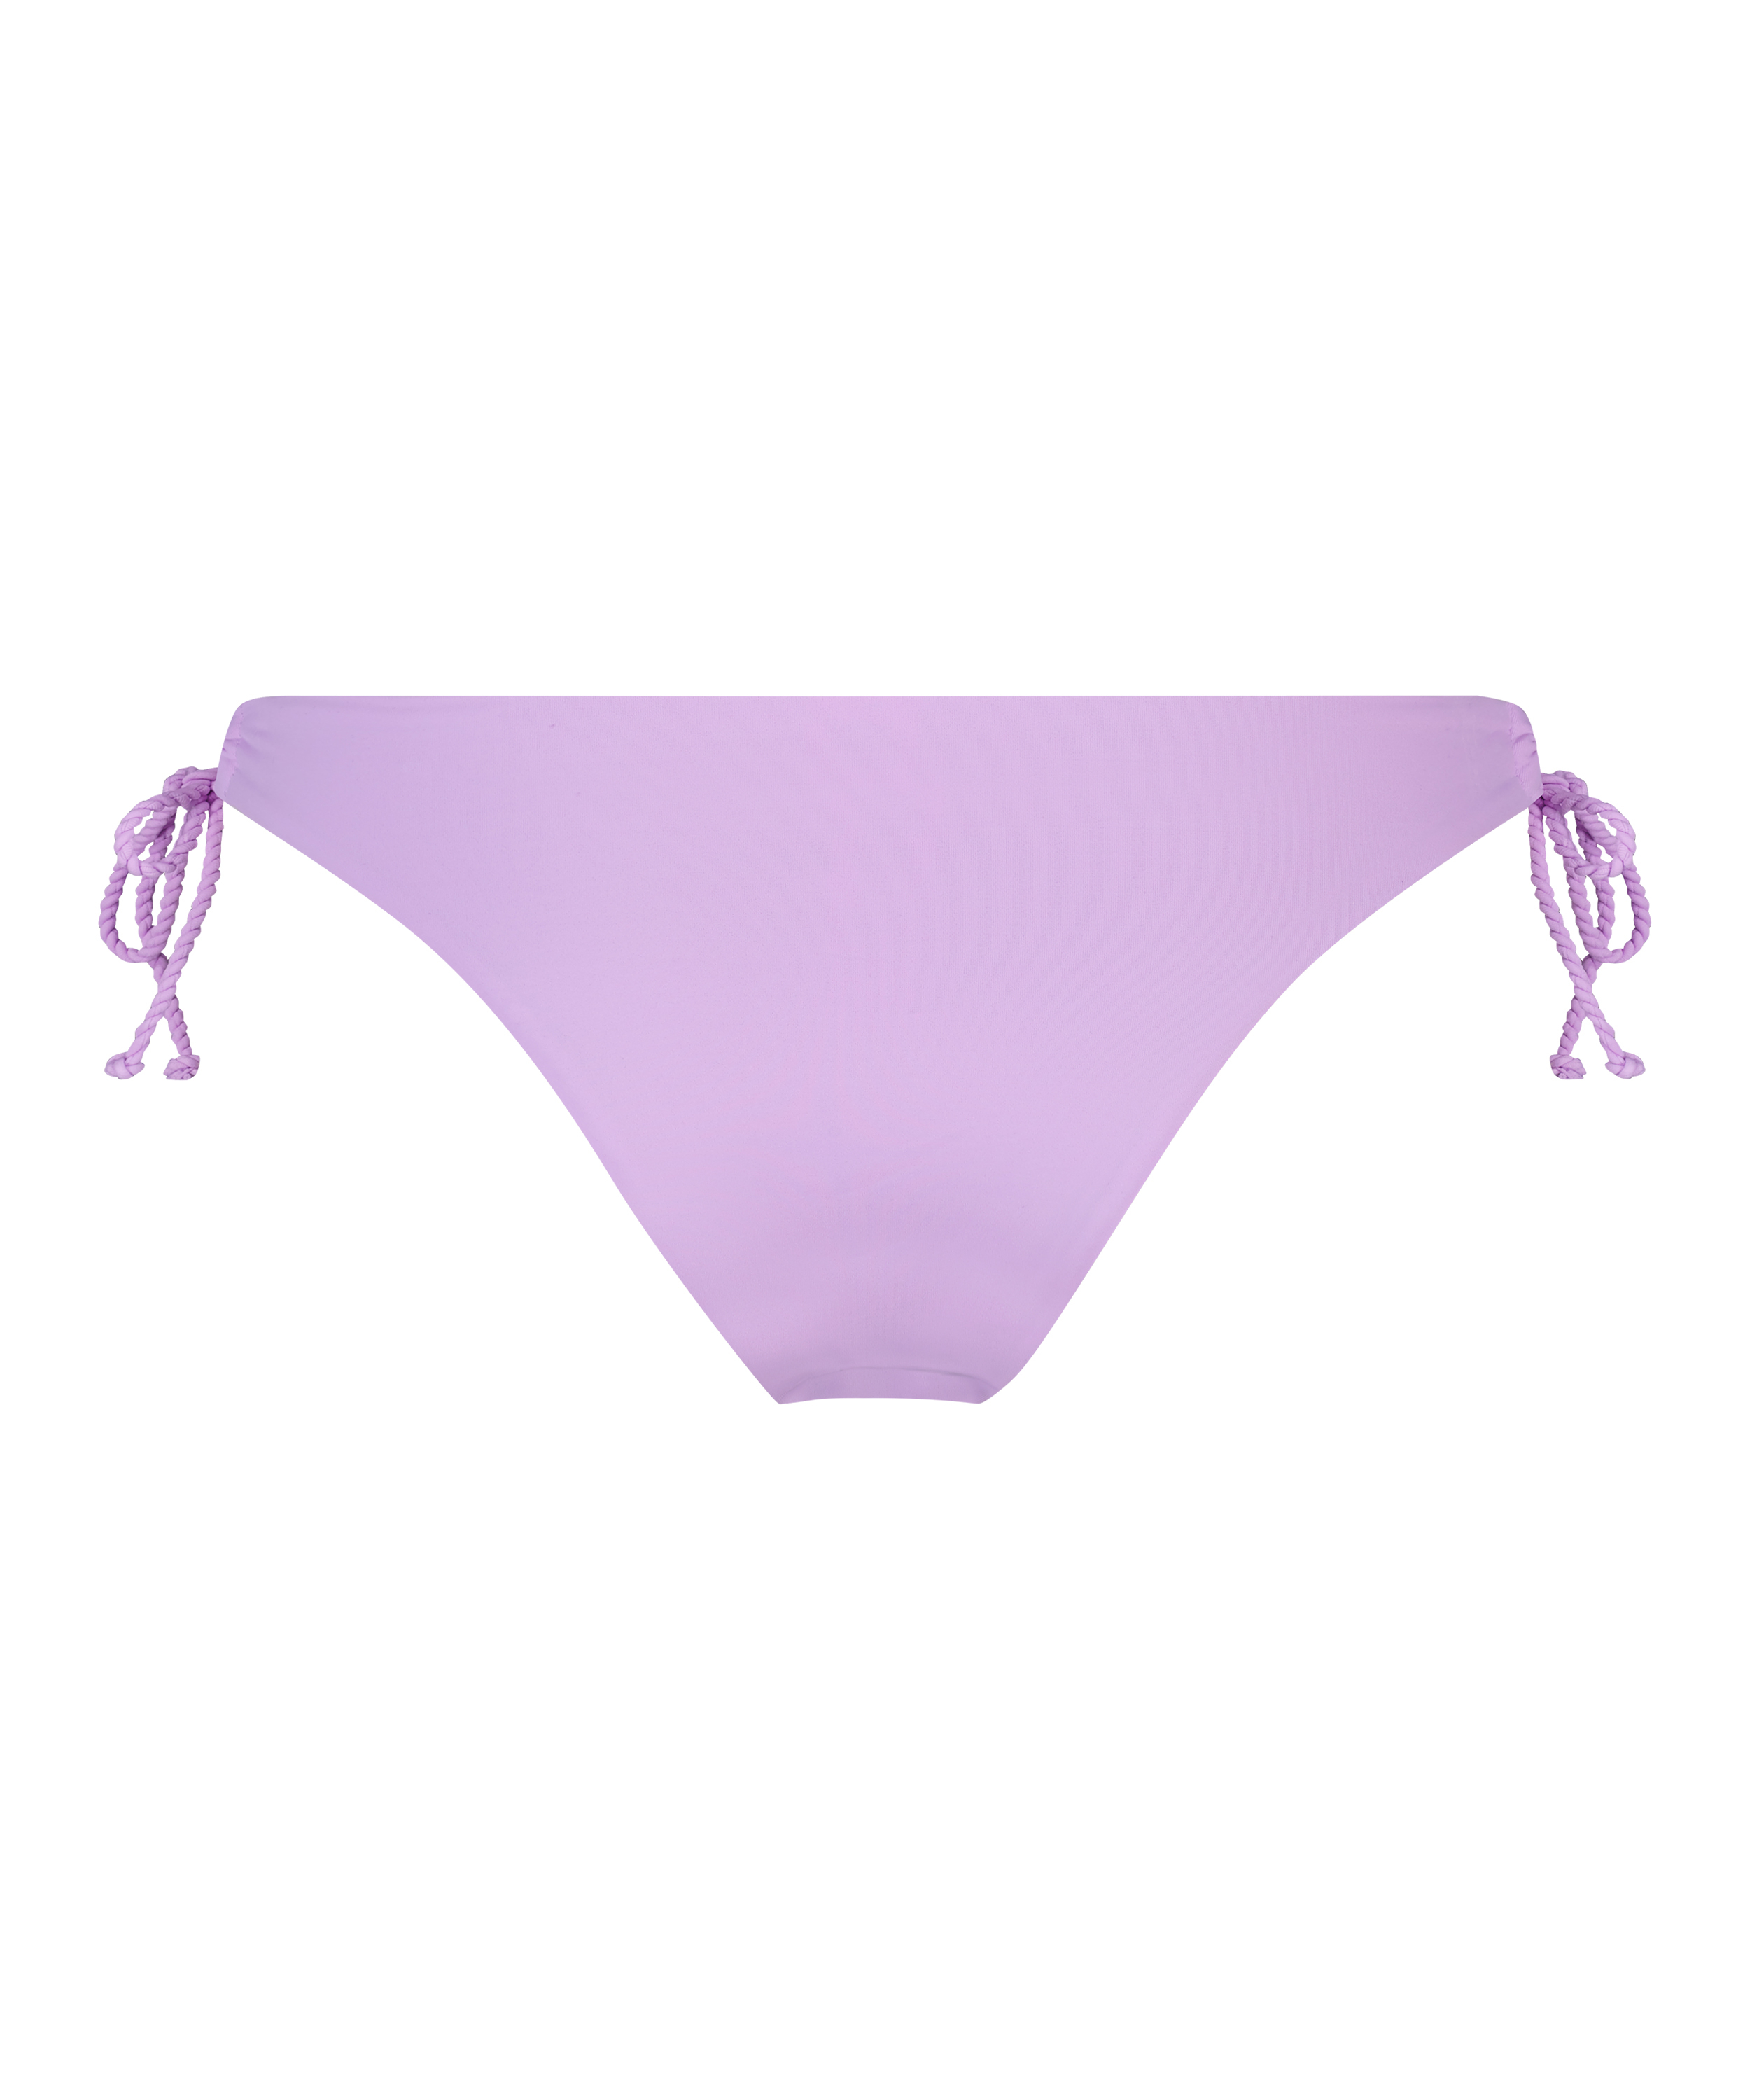 Wakaya High Leg Bikini Bottoms, Purple, main